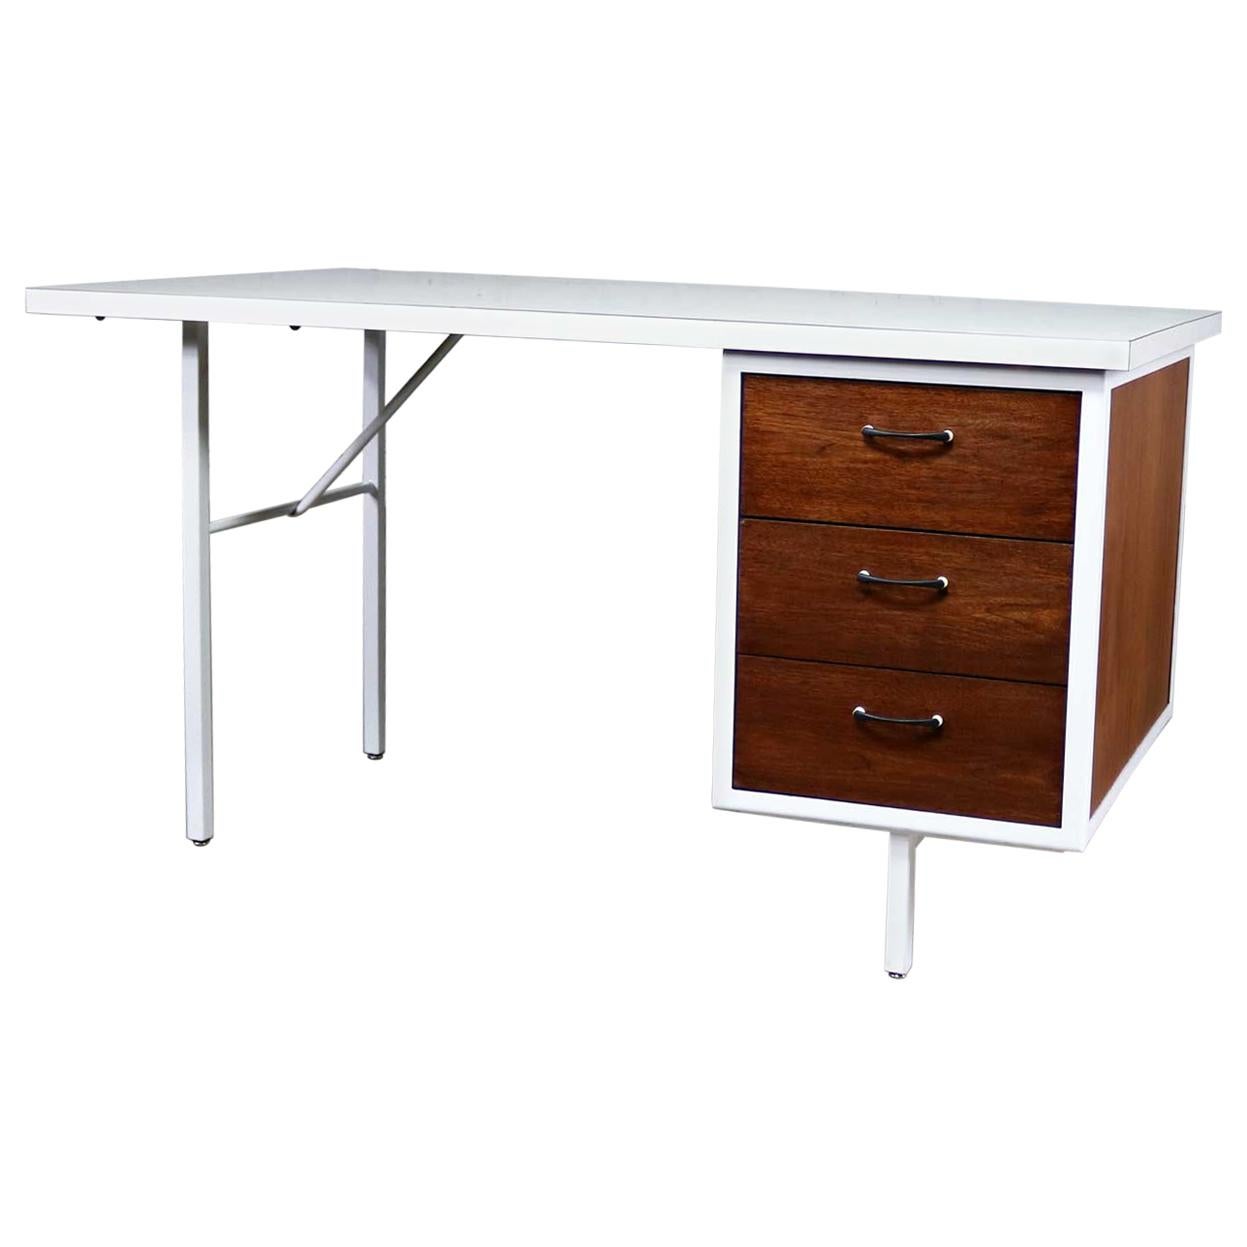 MCM-Schreibtisch von Robert John Co. Walnuss & Weiß lackierter Stahlrahmen & Laminatplatte